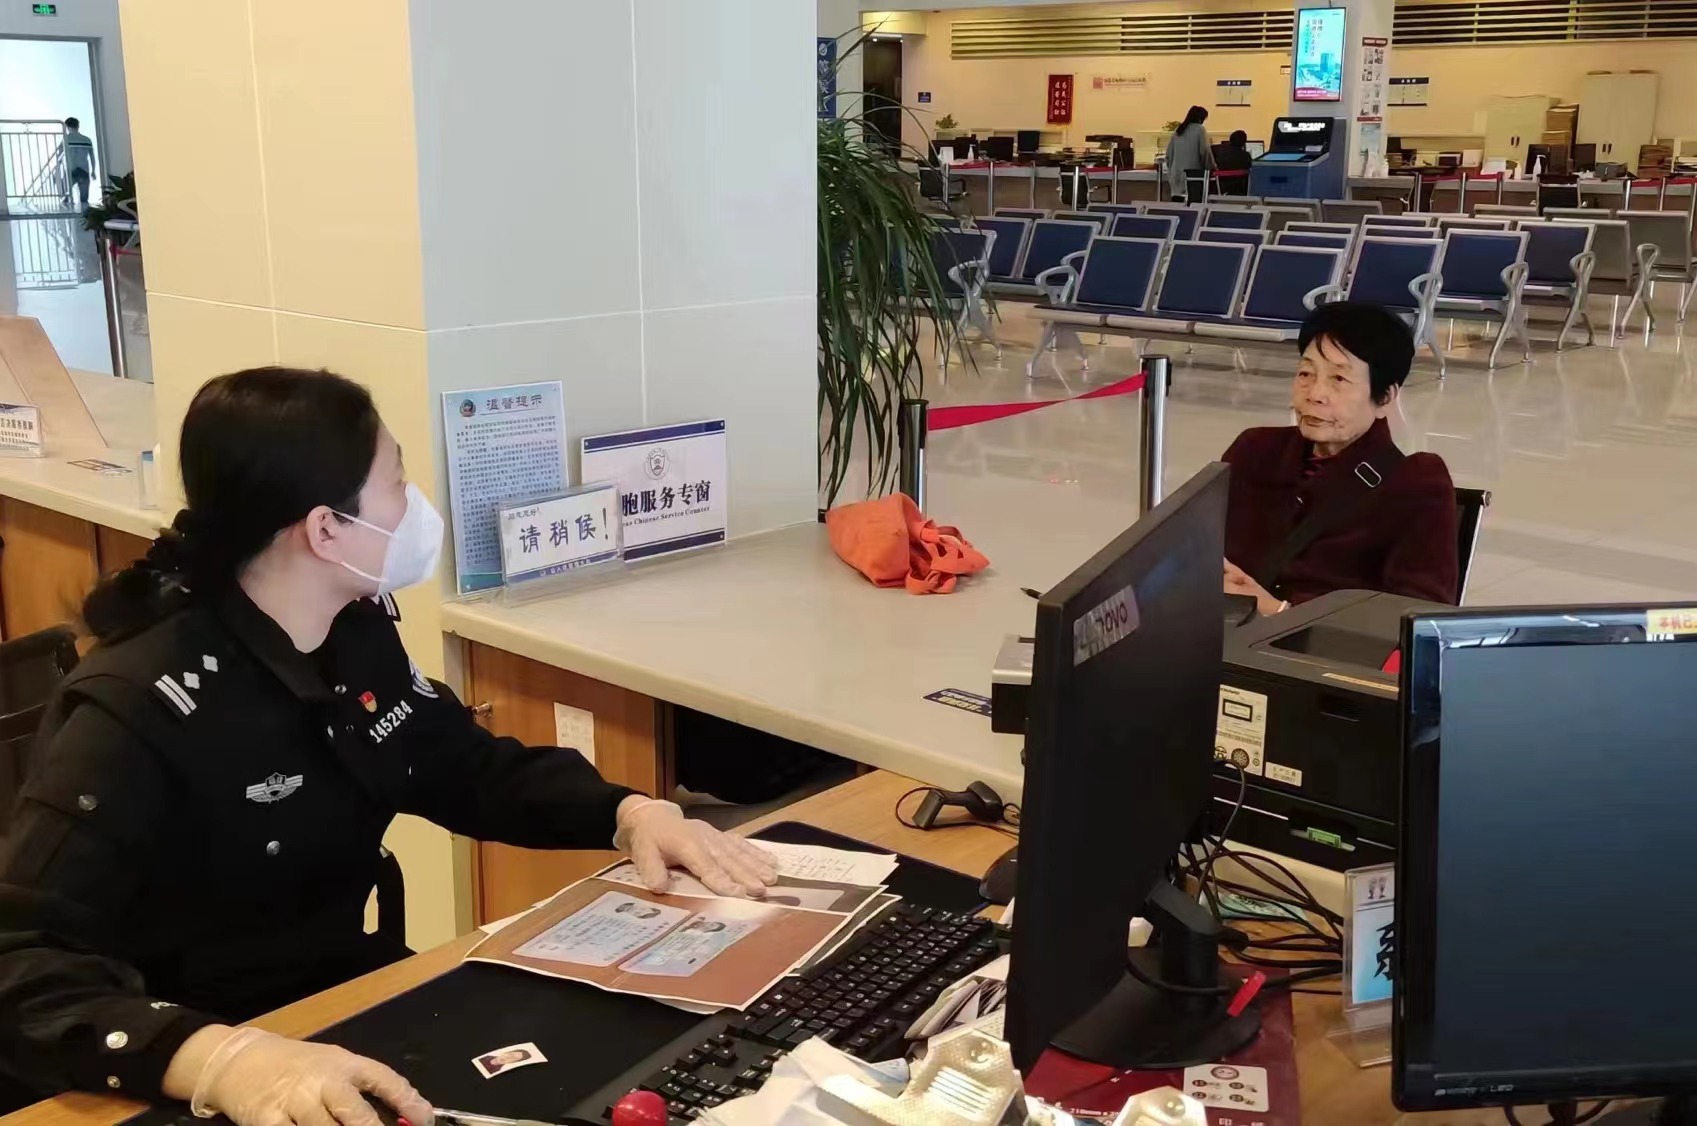 独居香港老太太丢失证件 出入境民警热心帮助